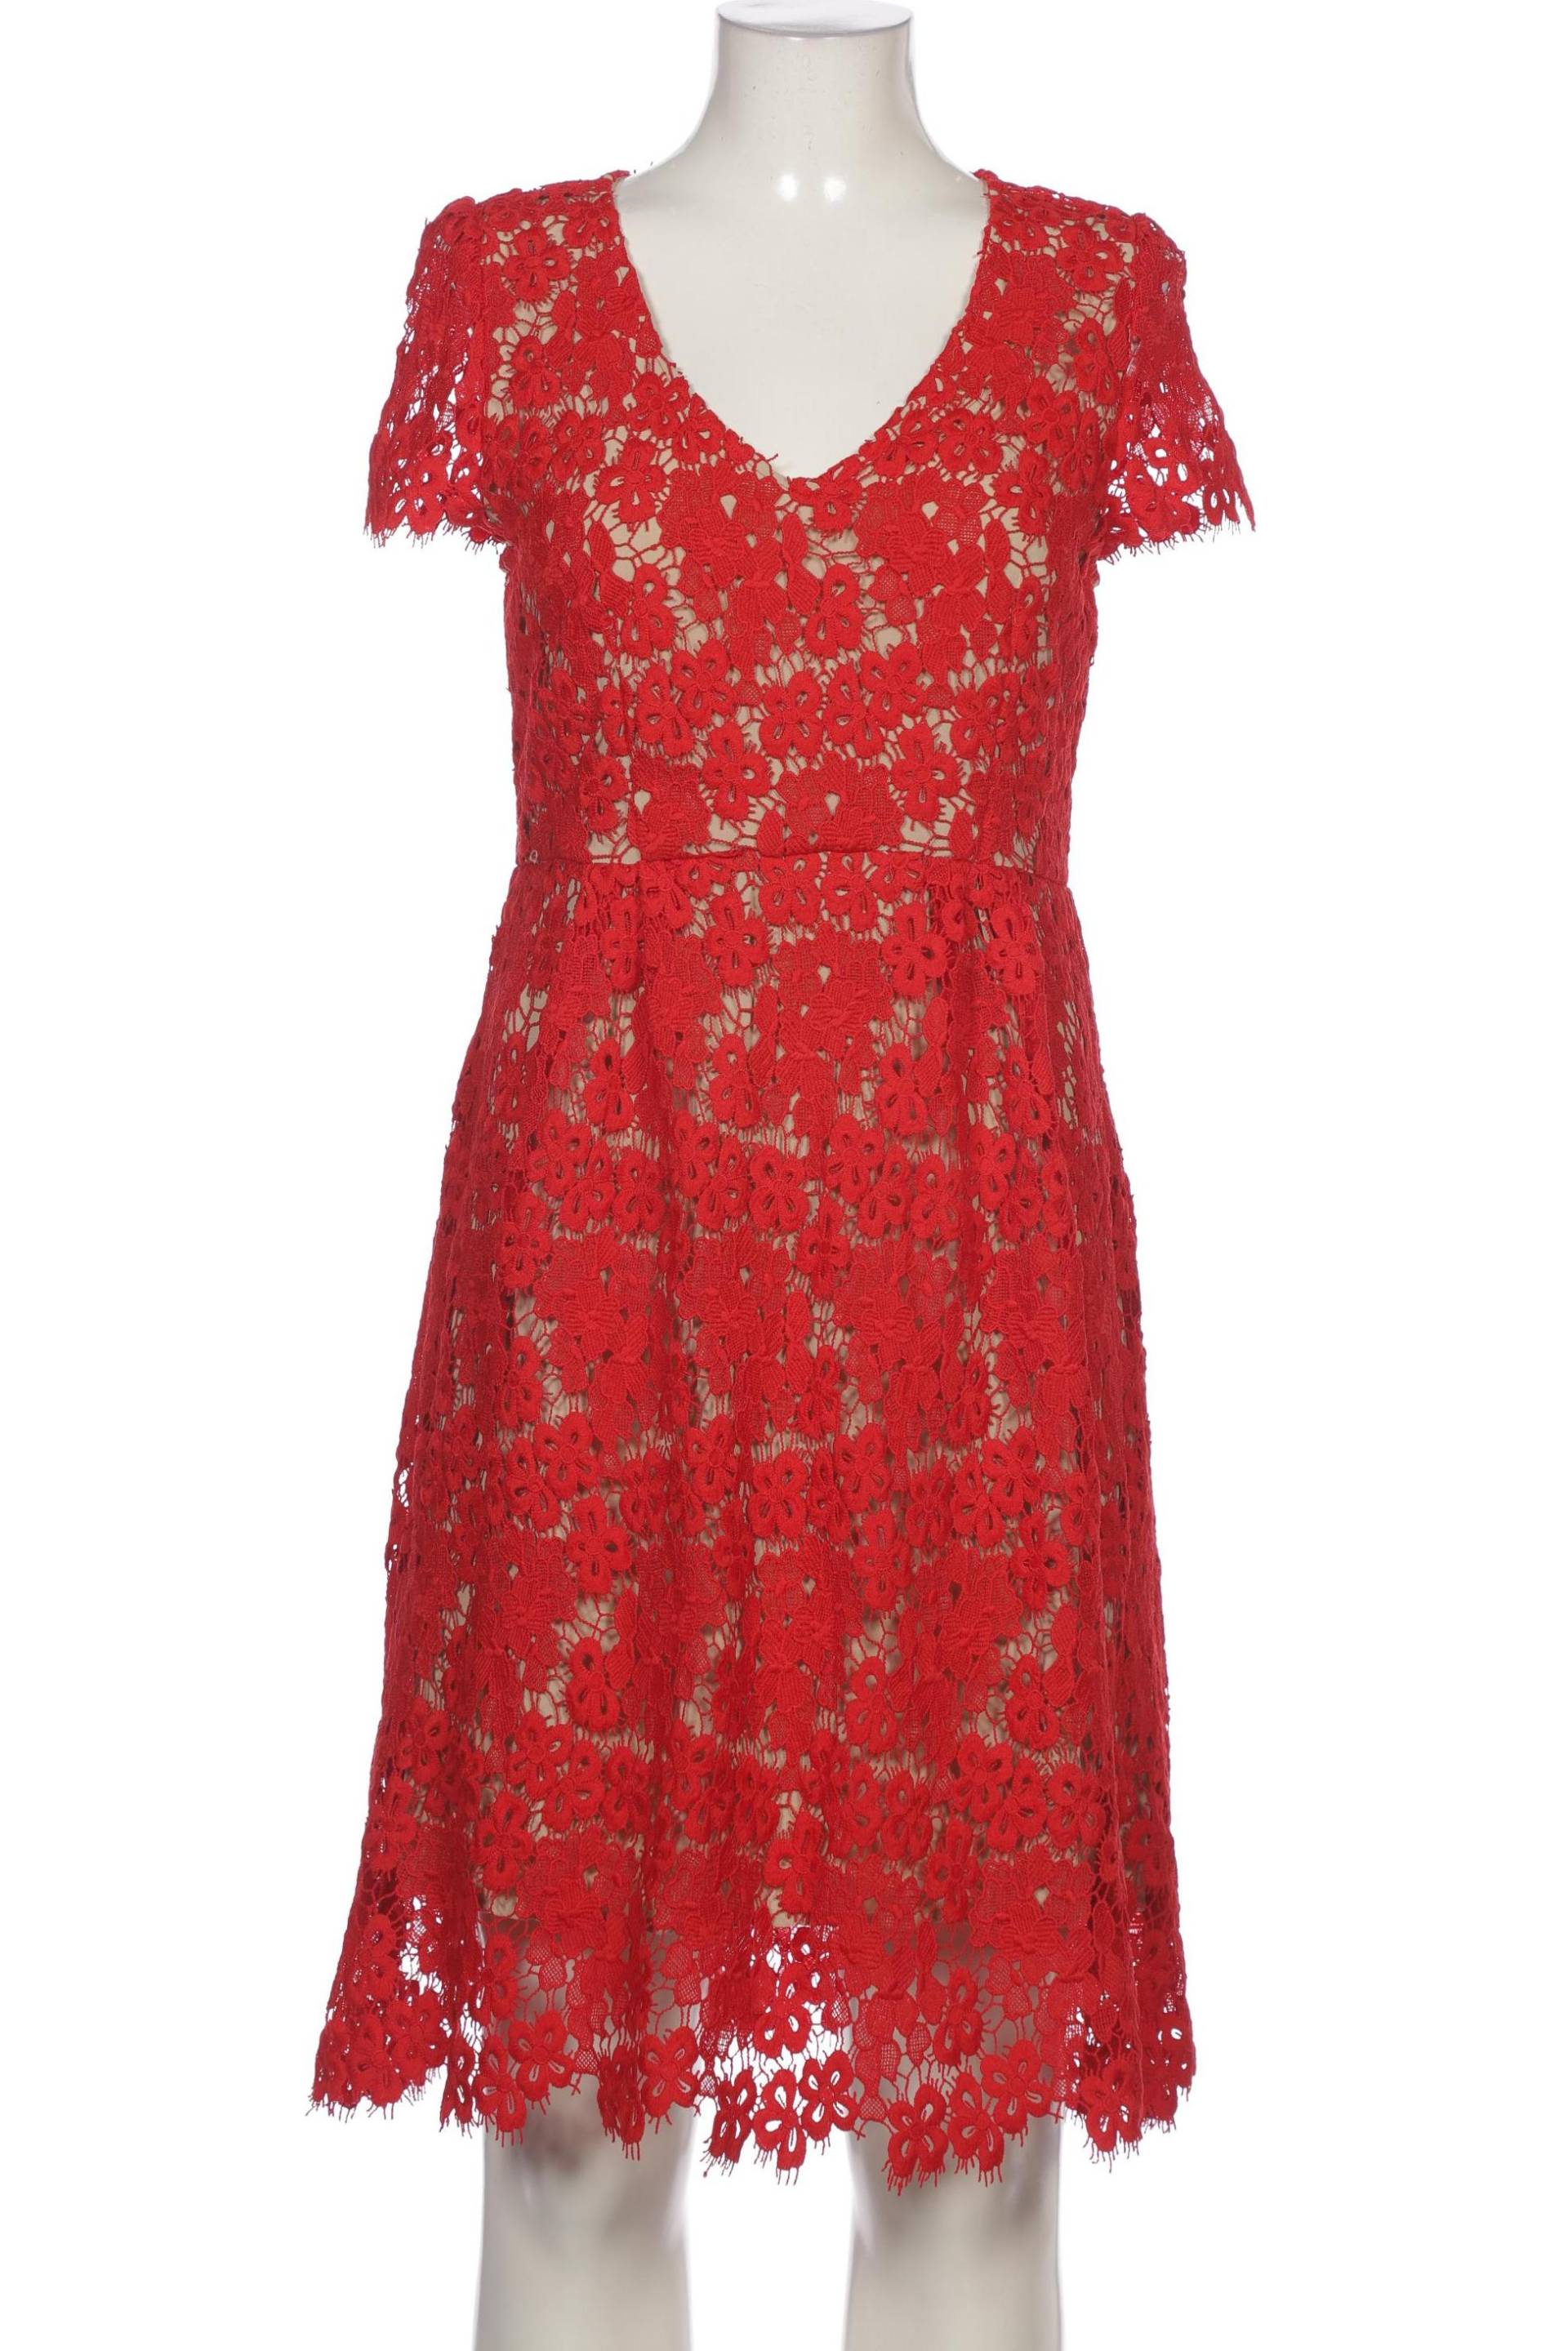 Hallhuber Damen Kleid, rot, Gr. 40 von Hallhuber